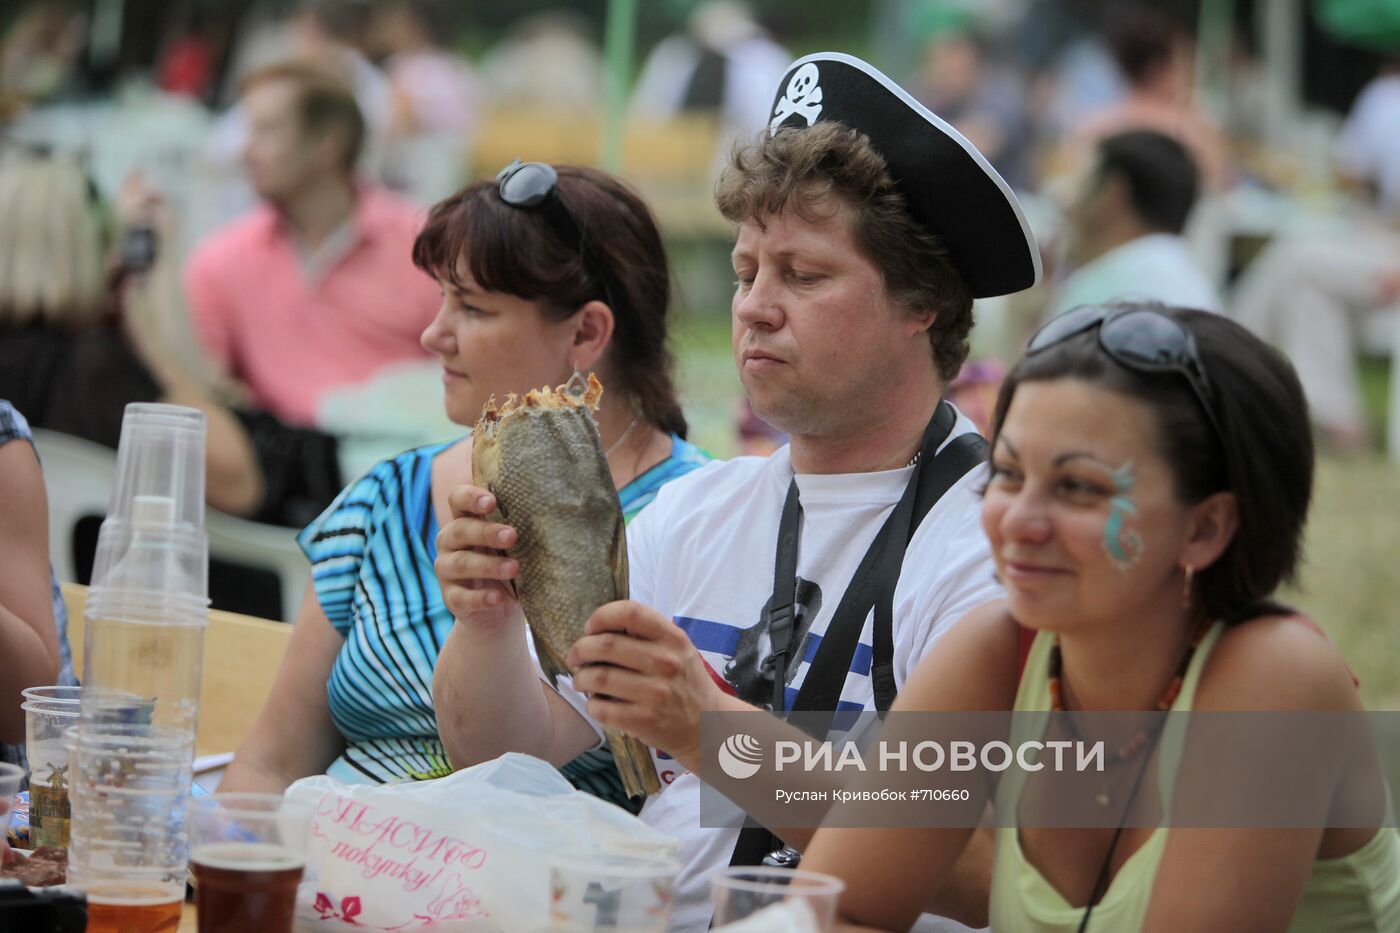 ХII Московский международный фестиваль пива